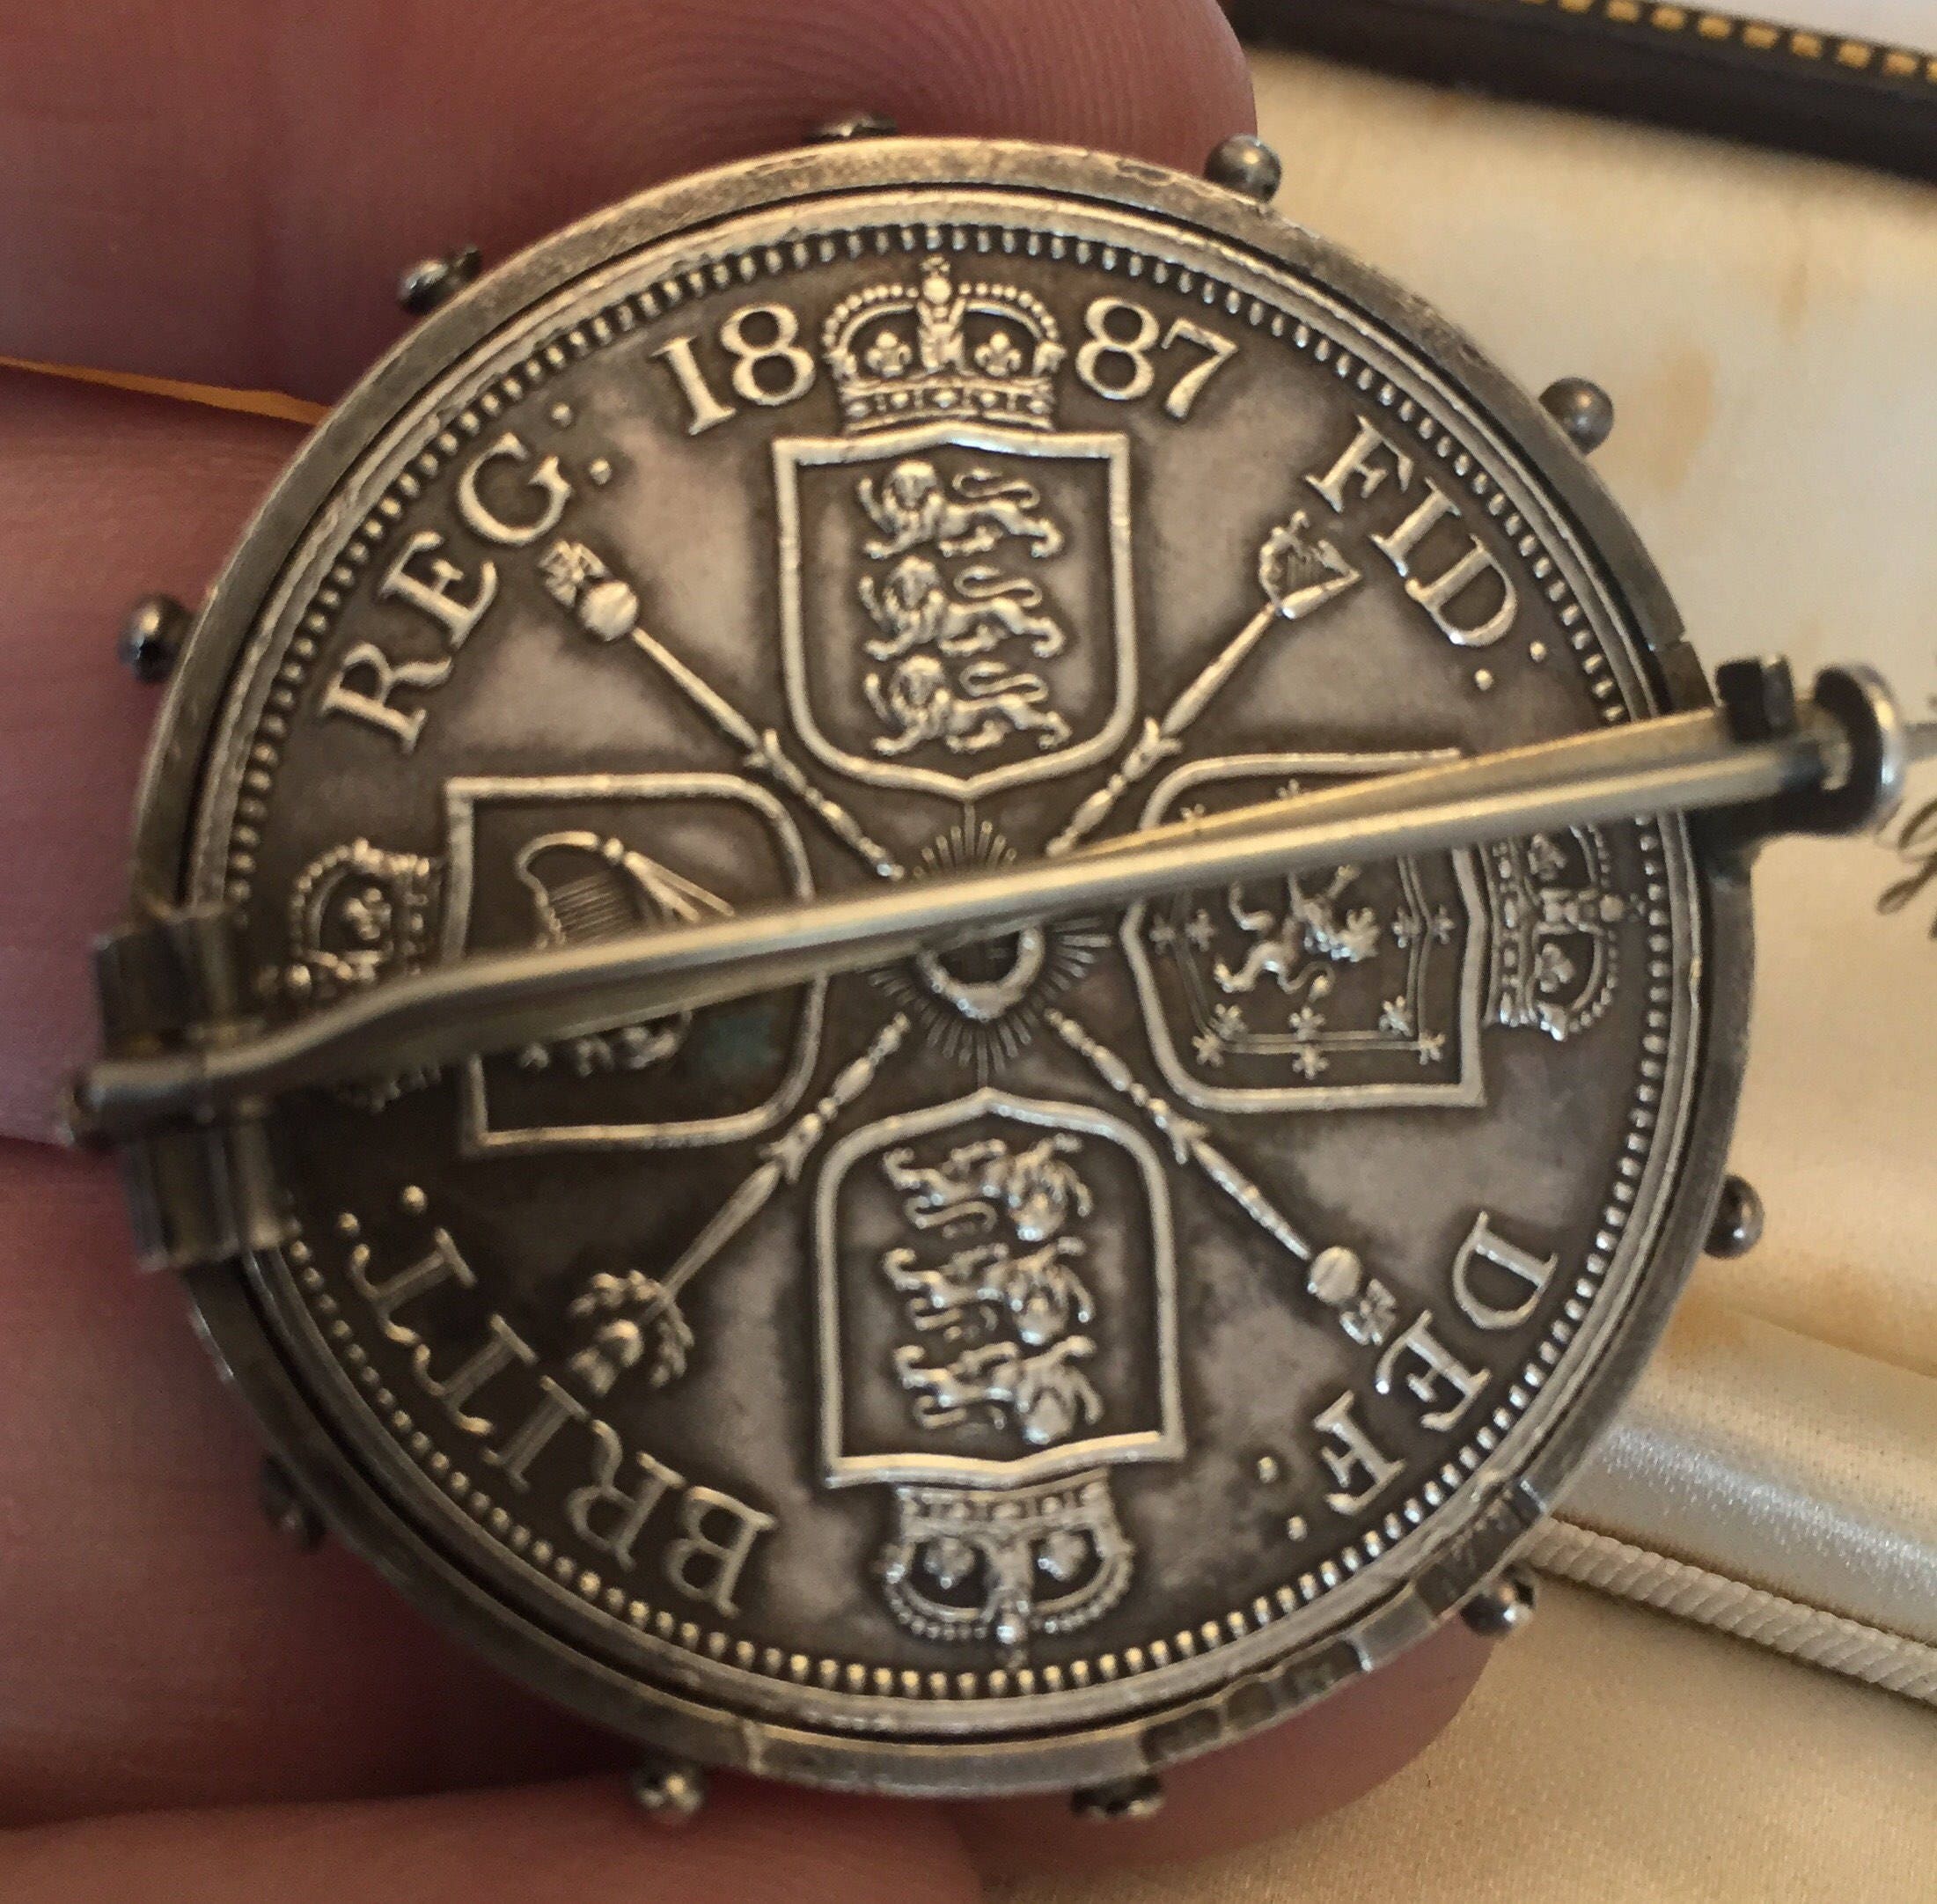 Antique coin - solid silver Queen Victoria Double Florin - 1887